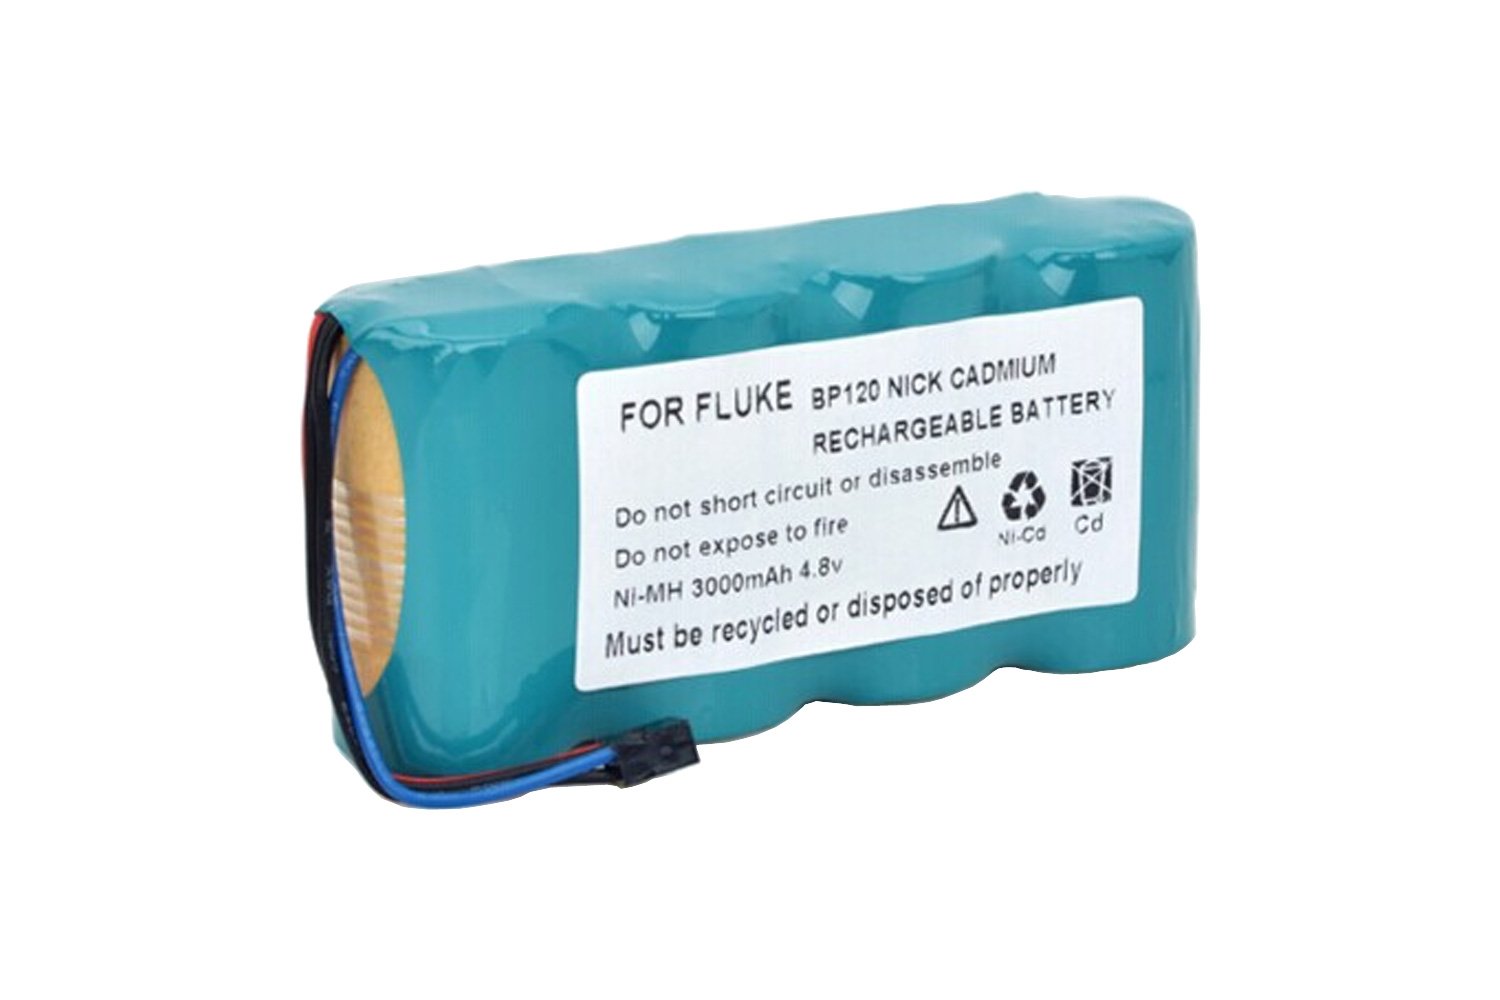 Fluke BP190 Rechargeable NiMH Battery Pack for sale online